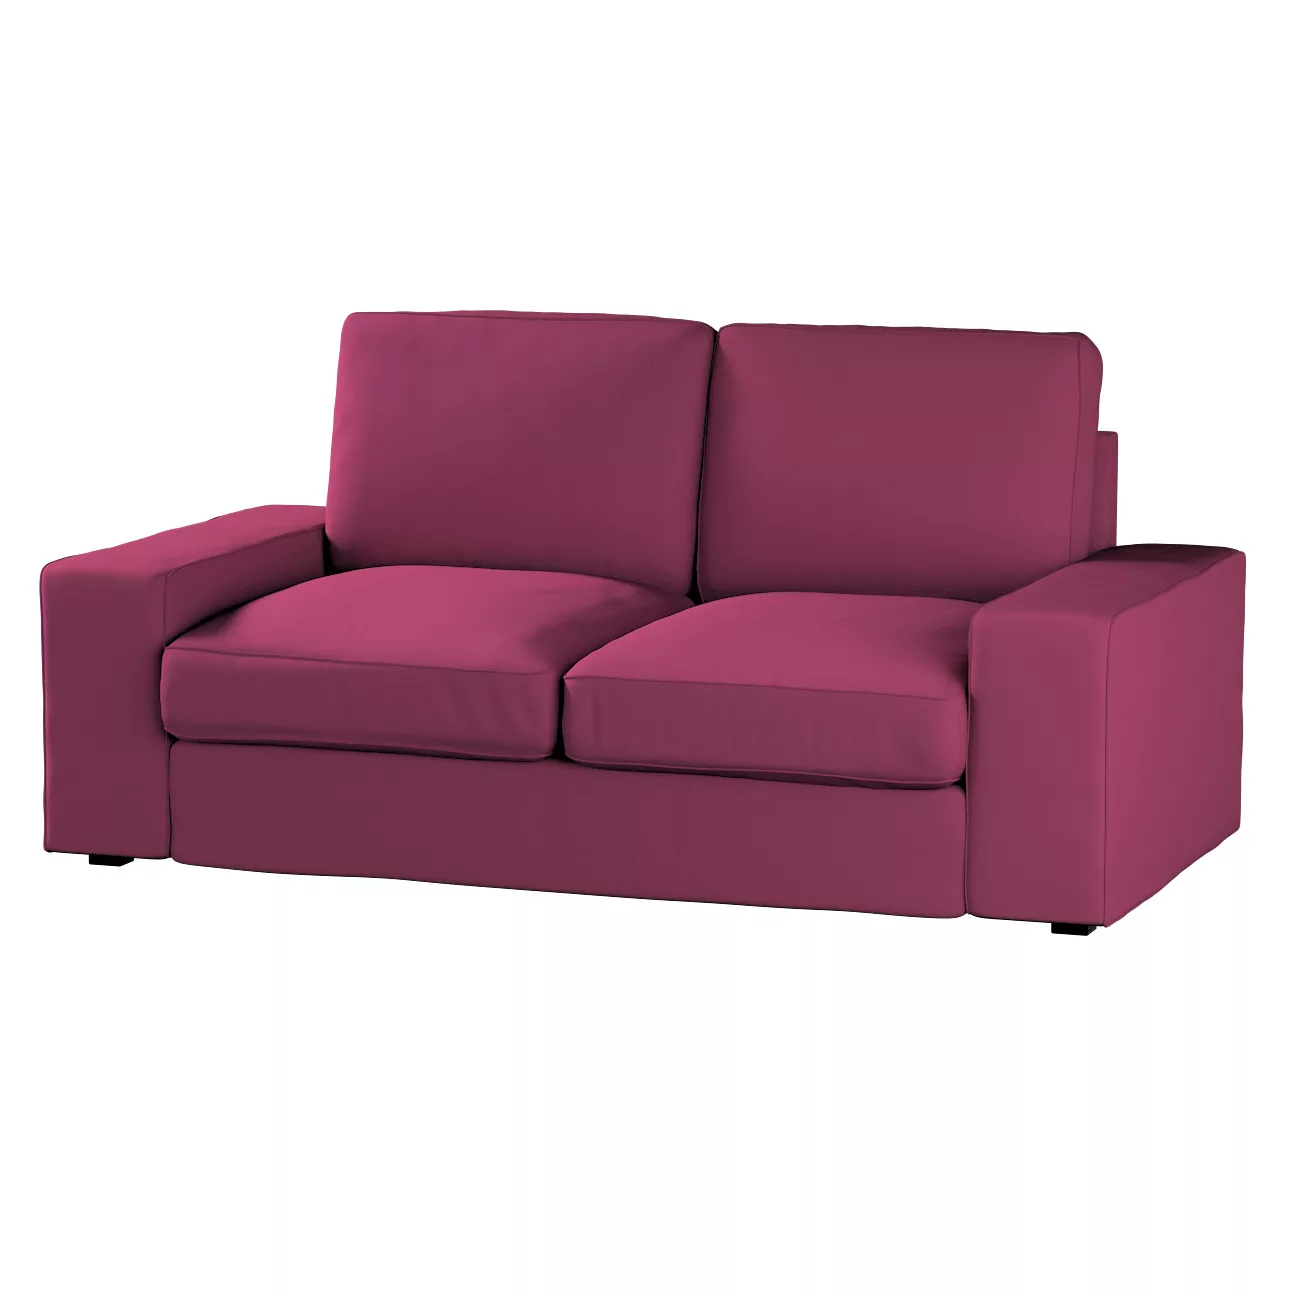 Bezug für Kivik 2-Sitzer Sofa, pflaume , Bezug für Sofa Kivik 2-Sitzer, Cot günstig online kaufen